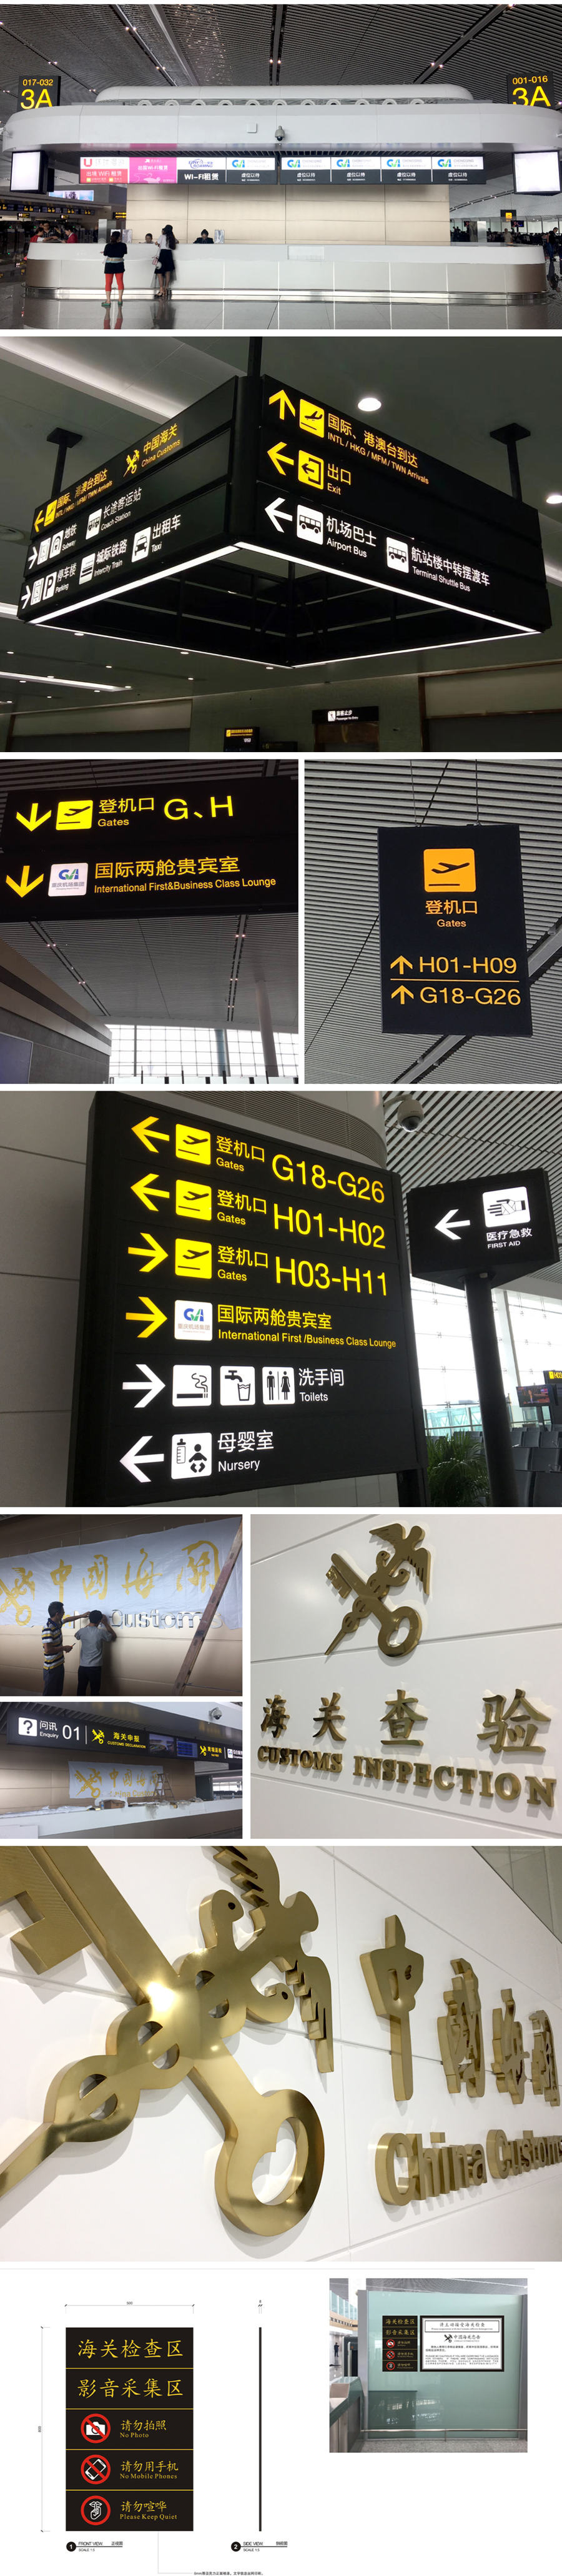 重庆机场——T3航站楼